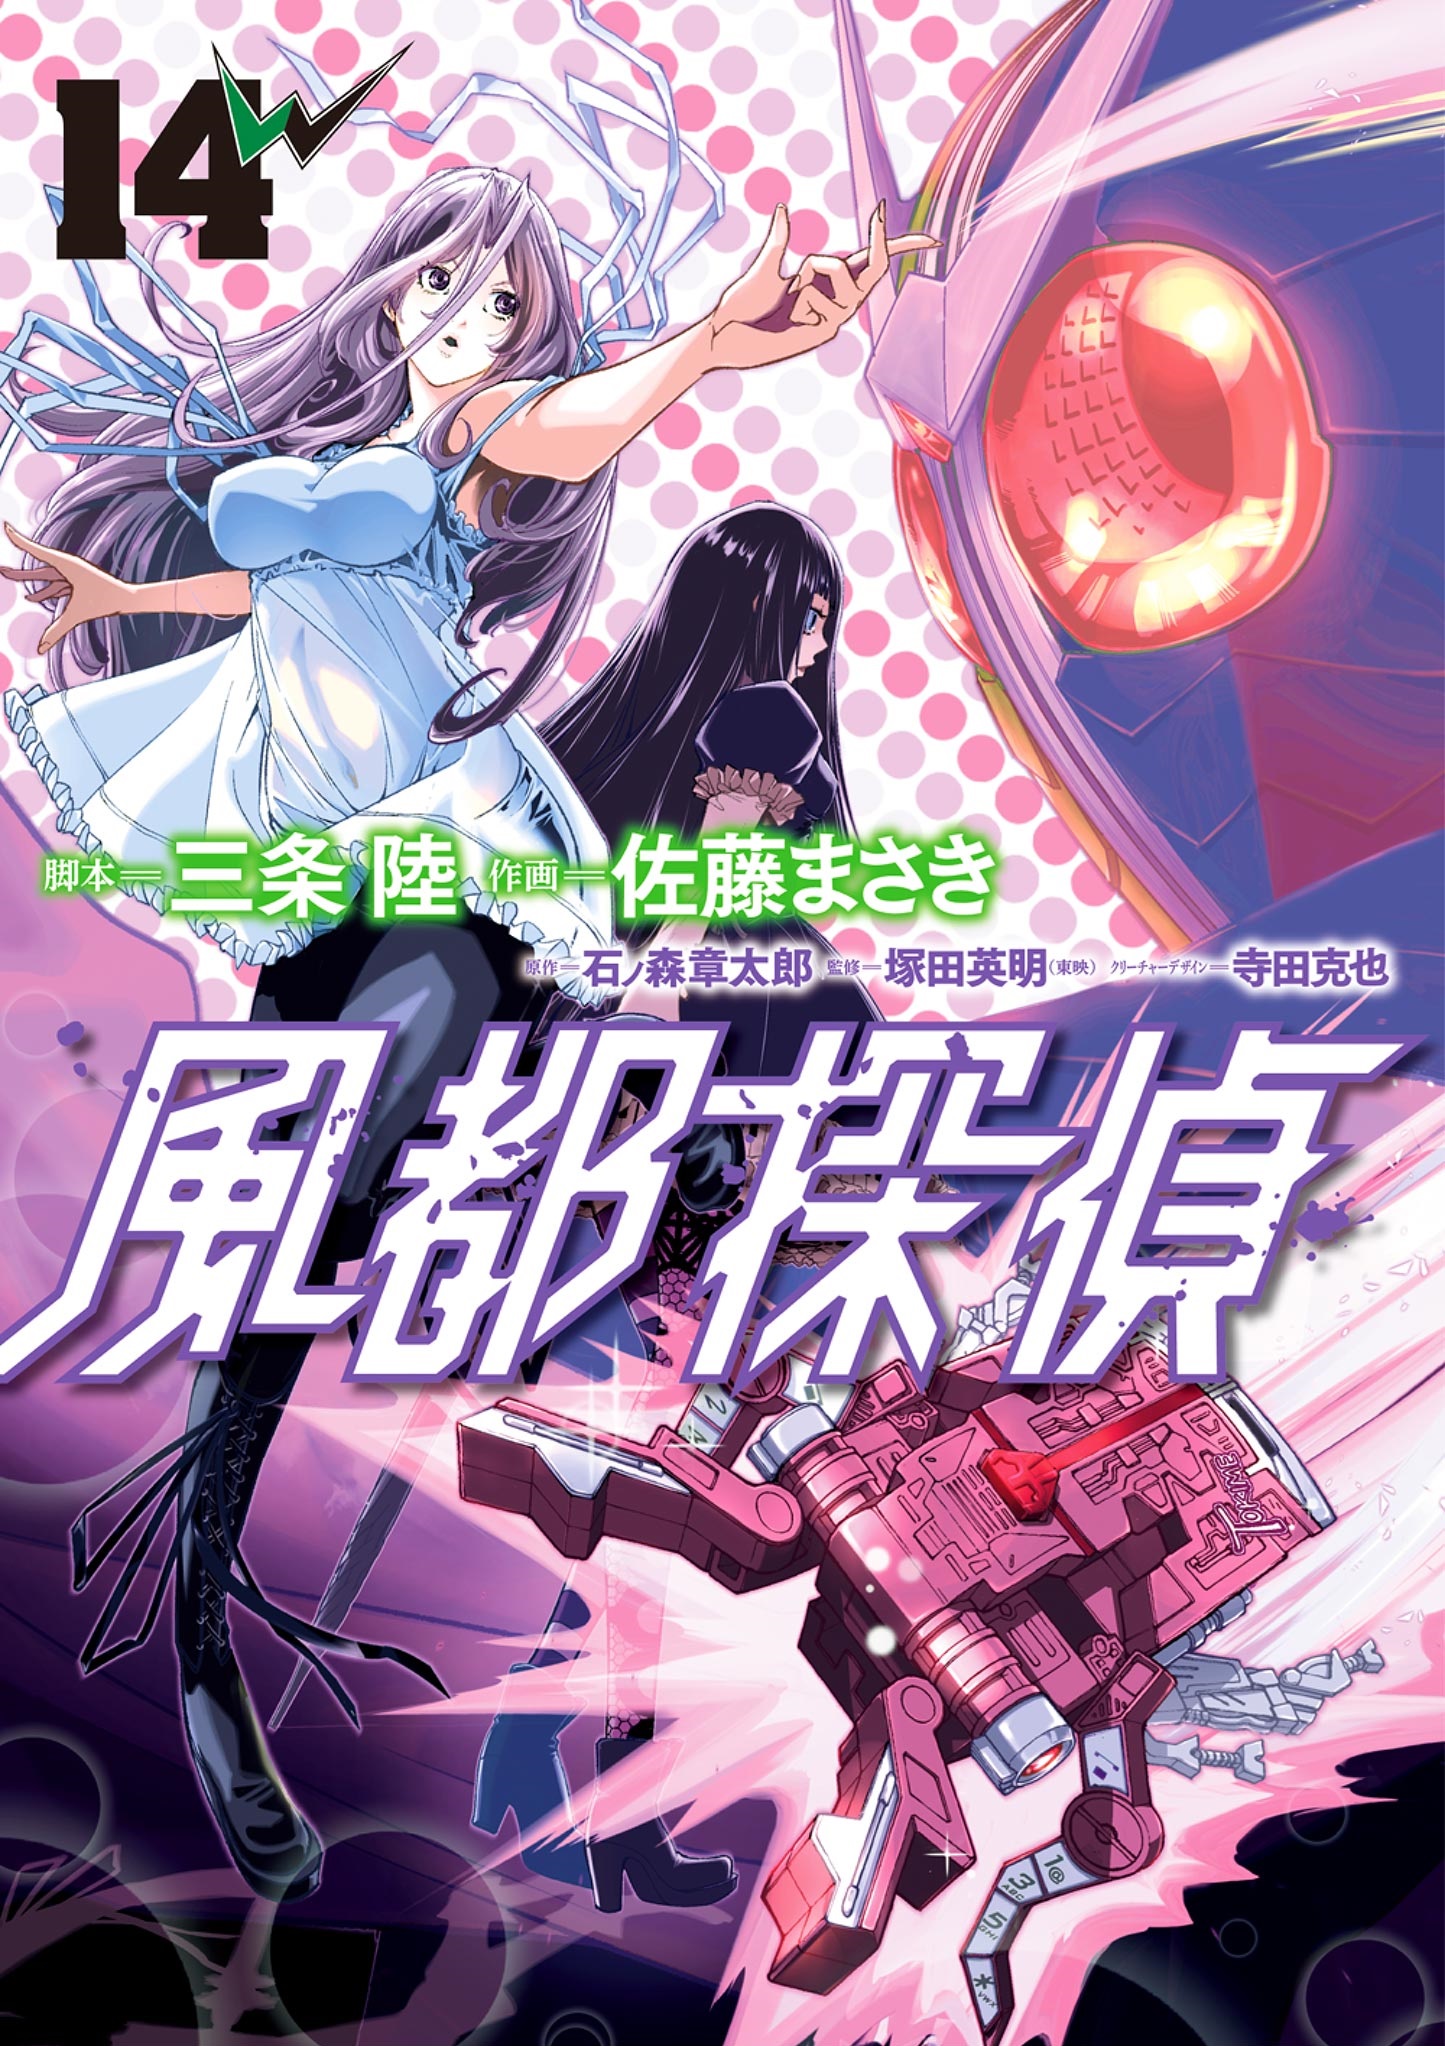 Kamen Rider W - Futo PI cover 2